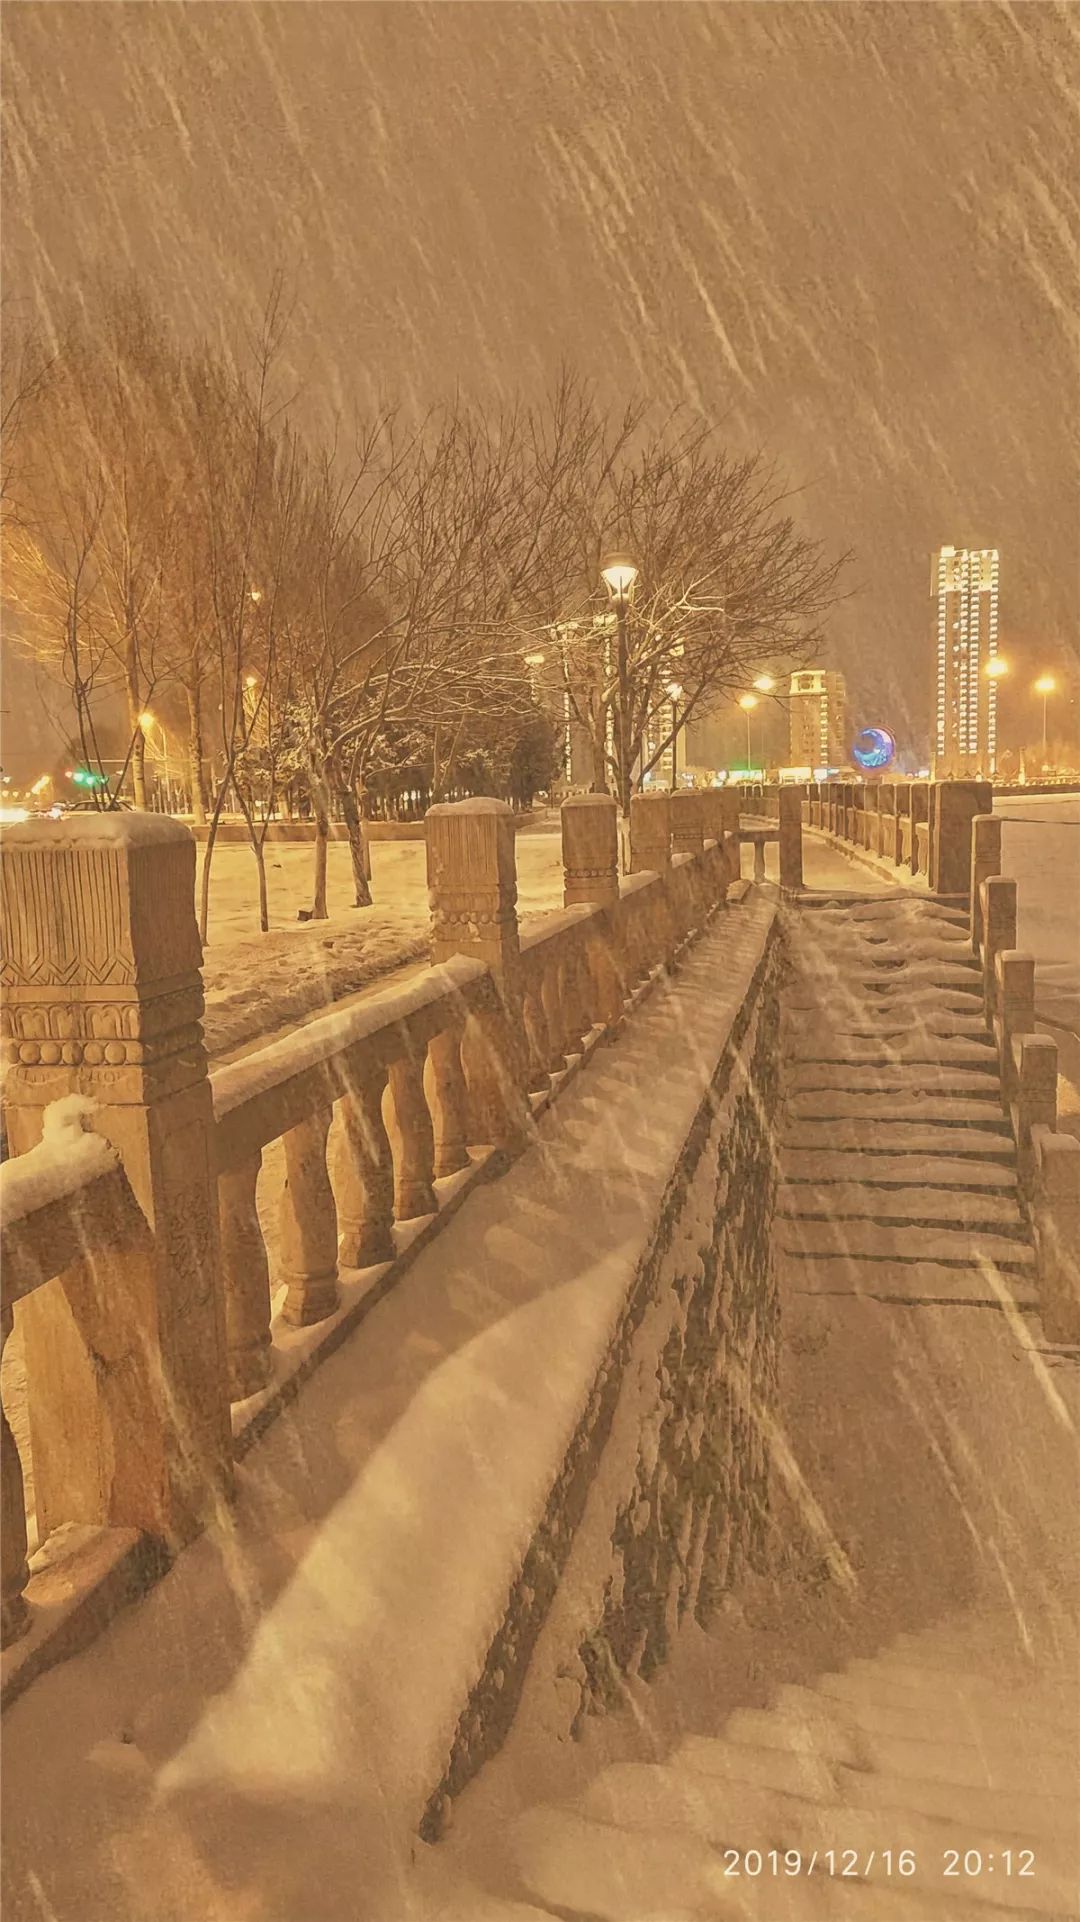 一场大雪惊艳了辽河两岸的夜色